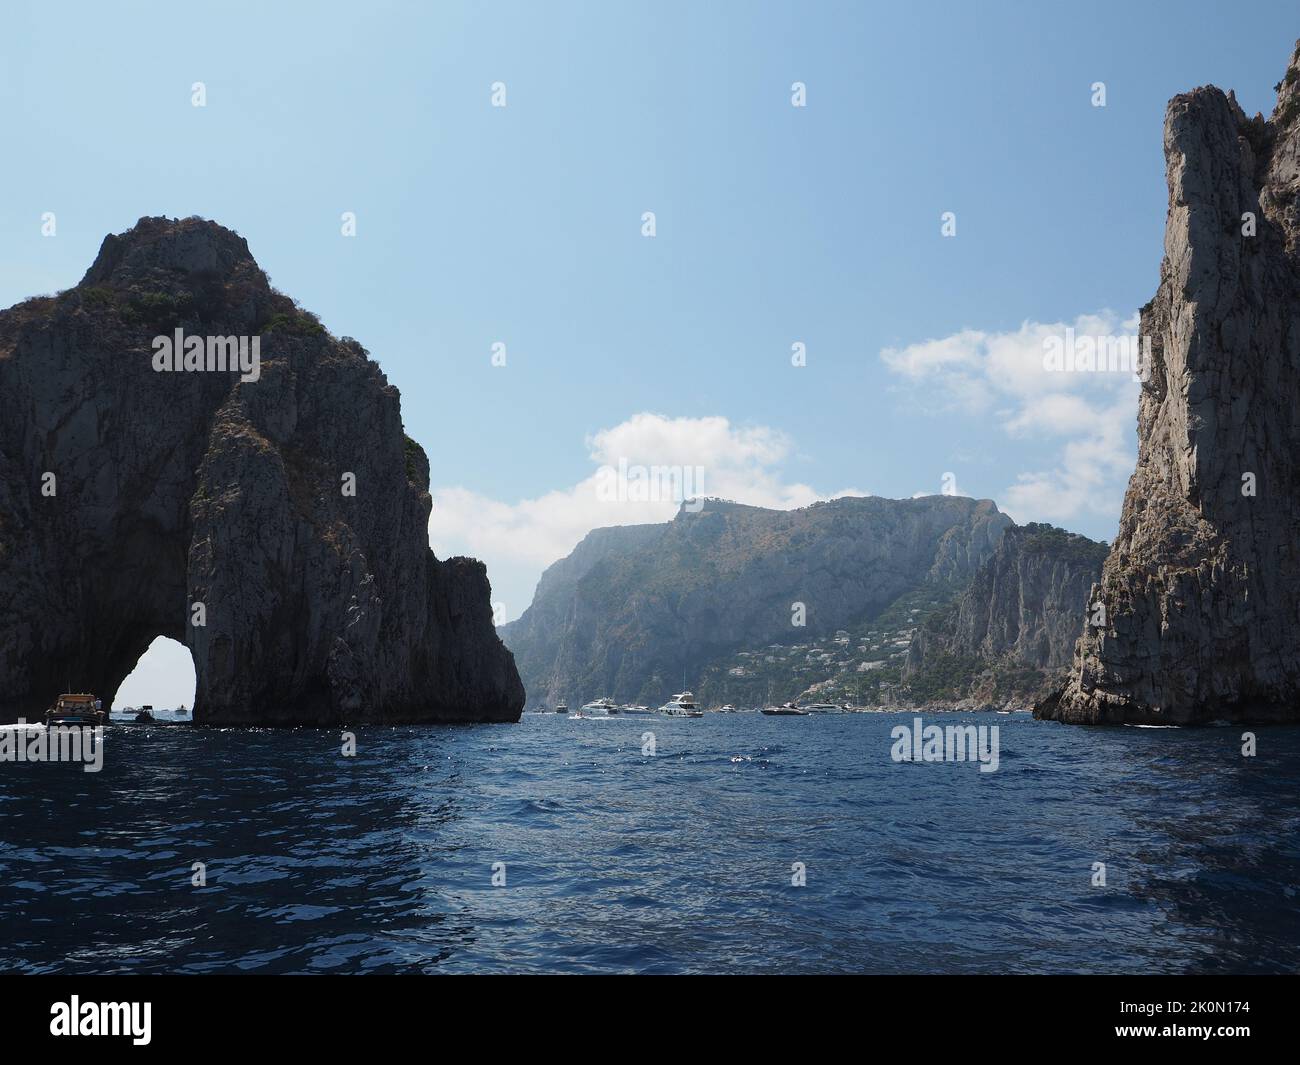 La costa de la isla de Capri es muy rocosa y empinada. Estos son los emblemáticos Faraglioni rocas, símbolos de la isla. Los barcos turísticos pasan por el arco. Foto de stock